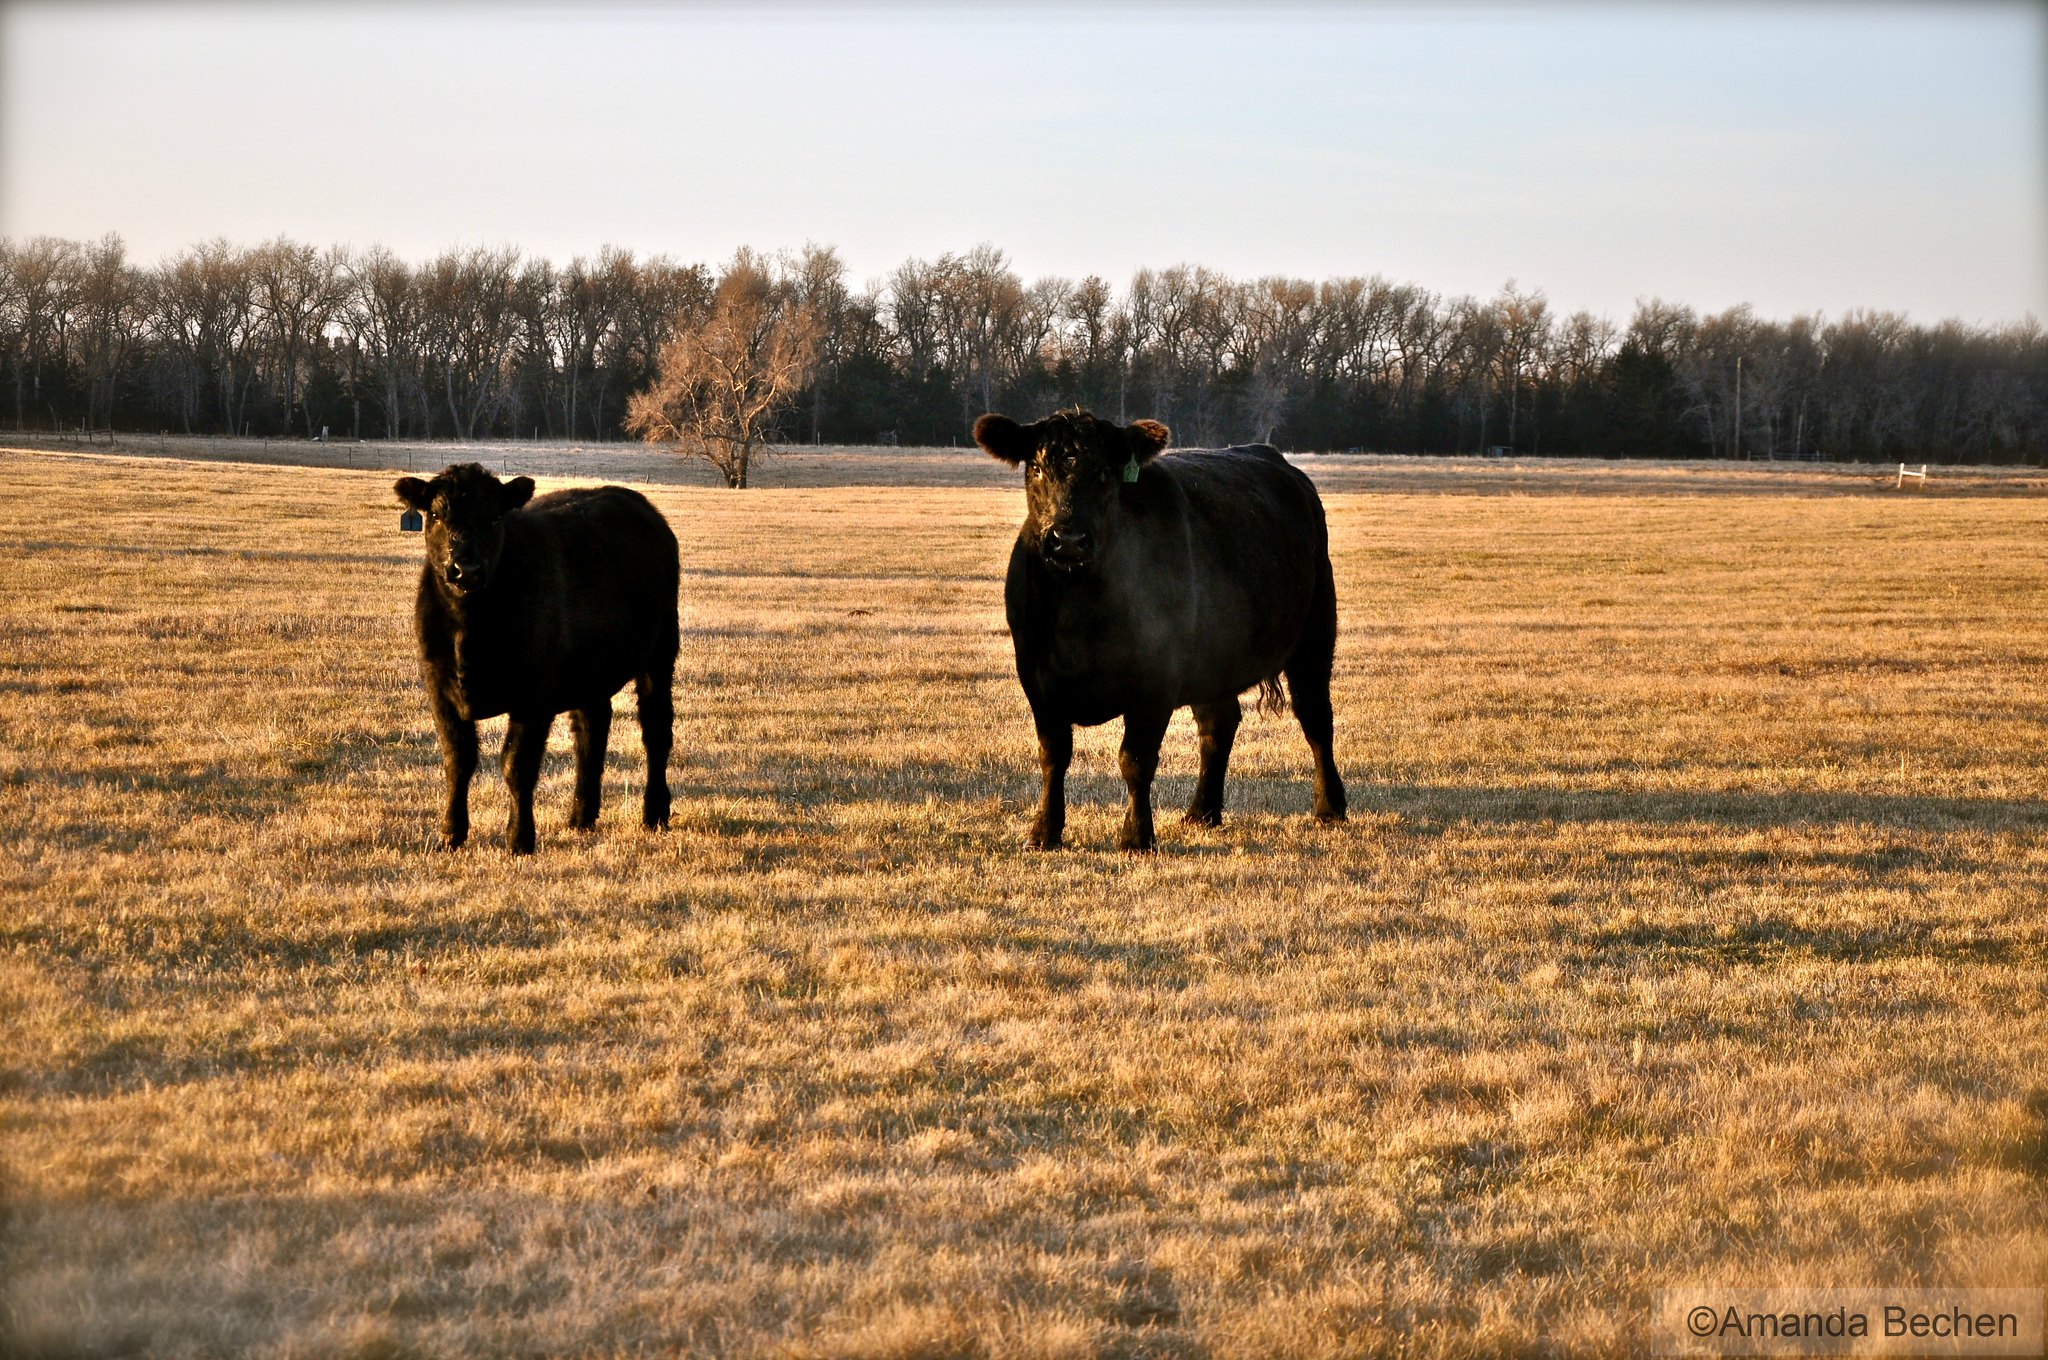 Goals of the U.S. Beef Industry